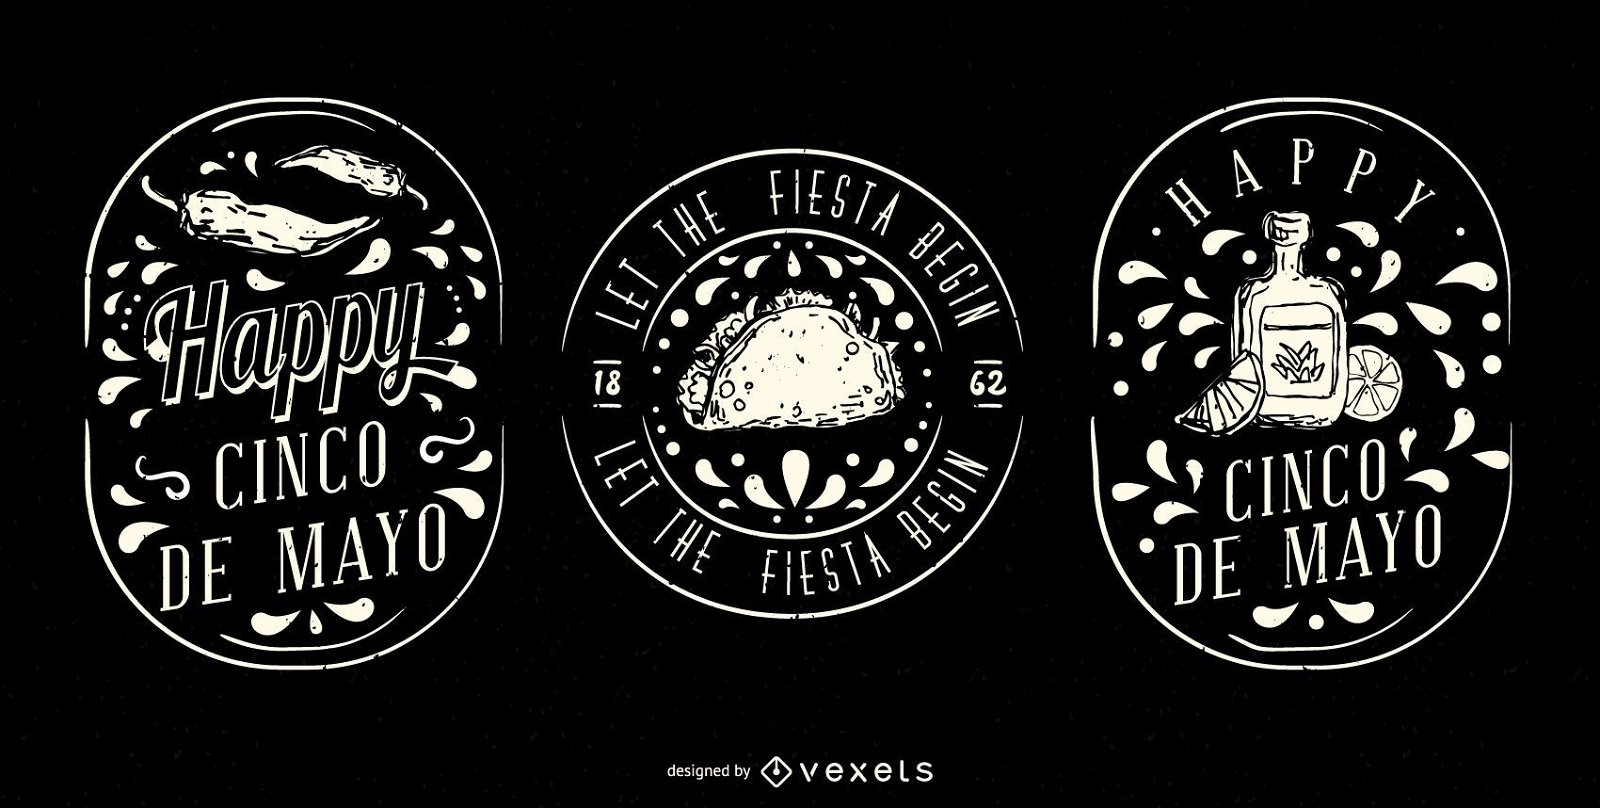 Conjunto de insignias ilustradas del Cinco de Mayo